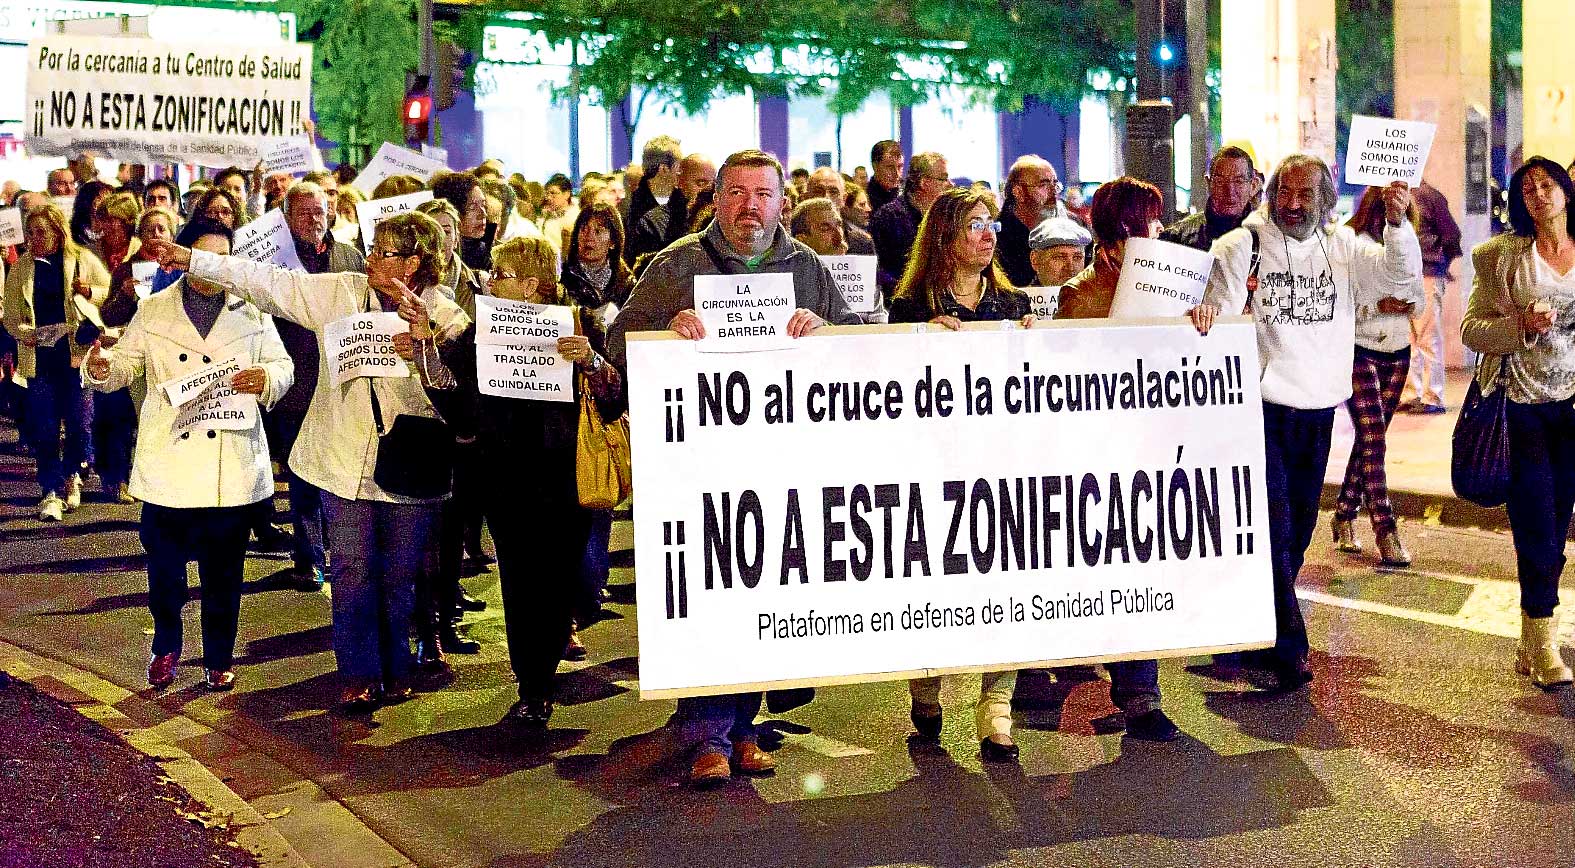 Manifestación en contra de la rezonificación sanitaria aprobada por el Gobierno regional.